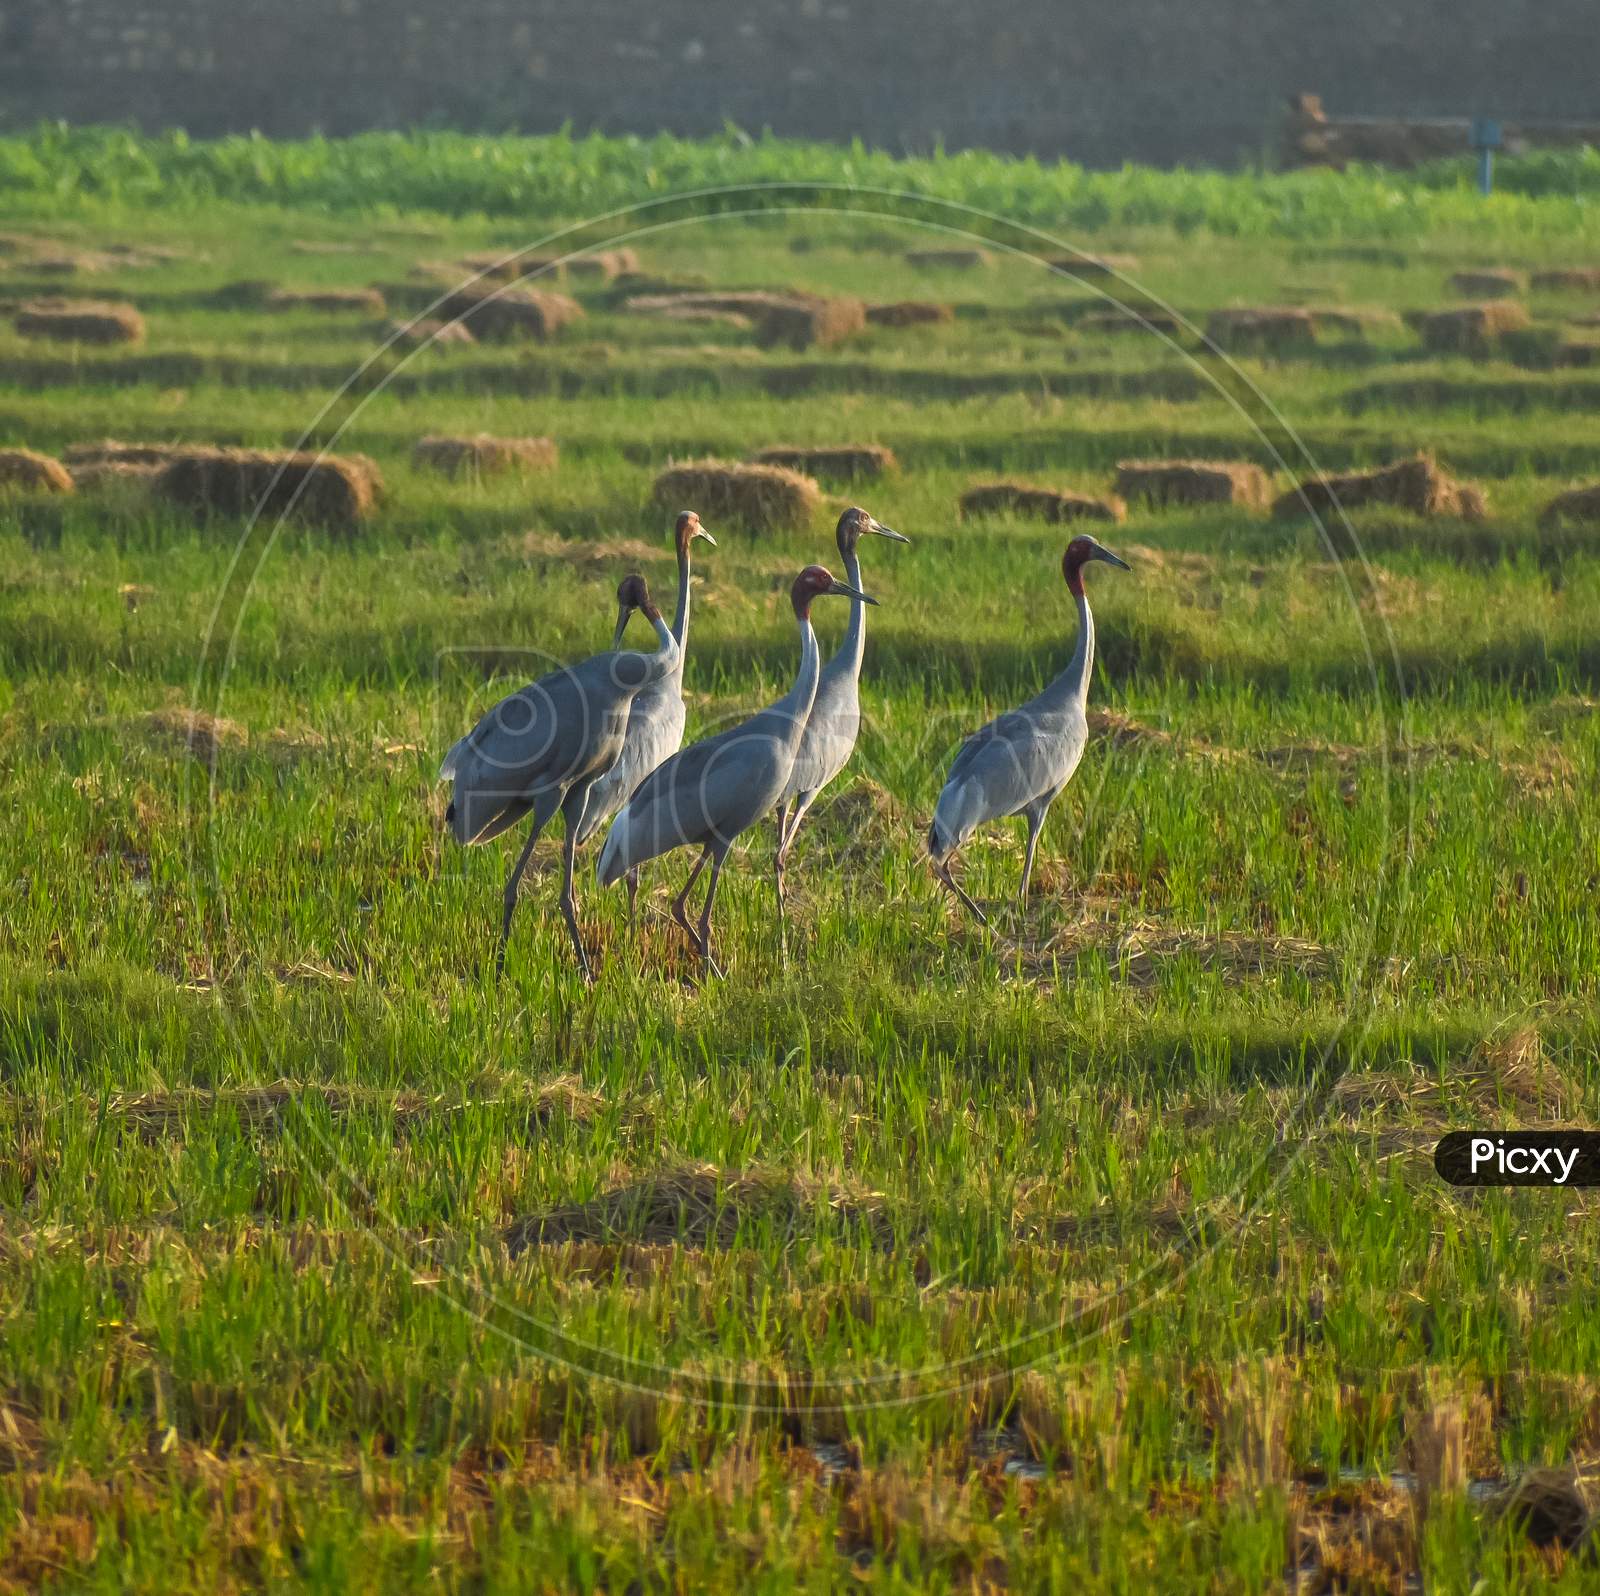 Sarus cranes